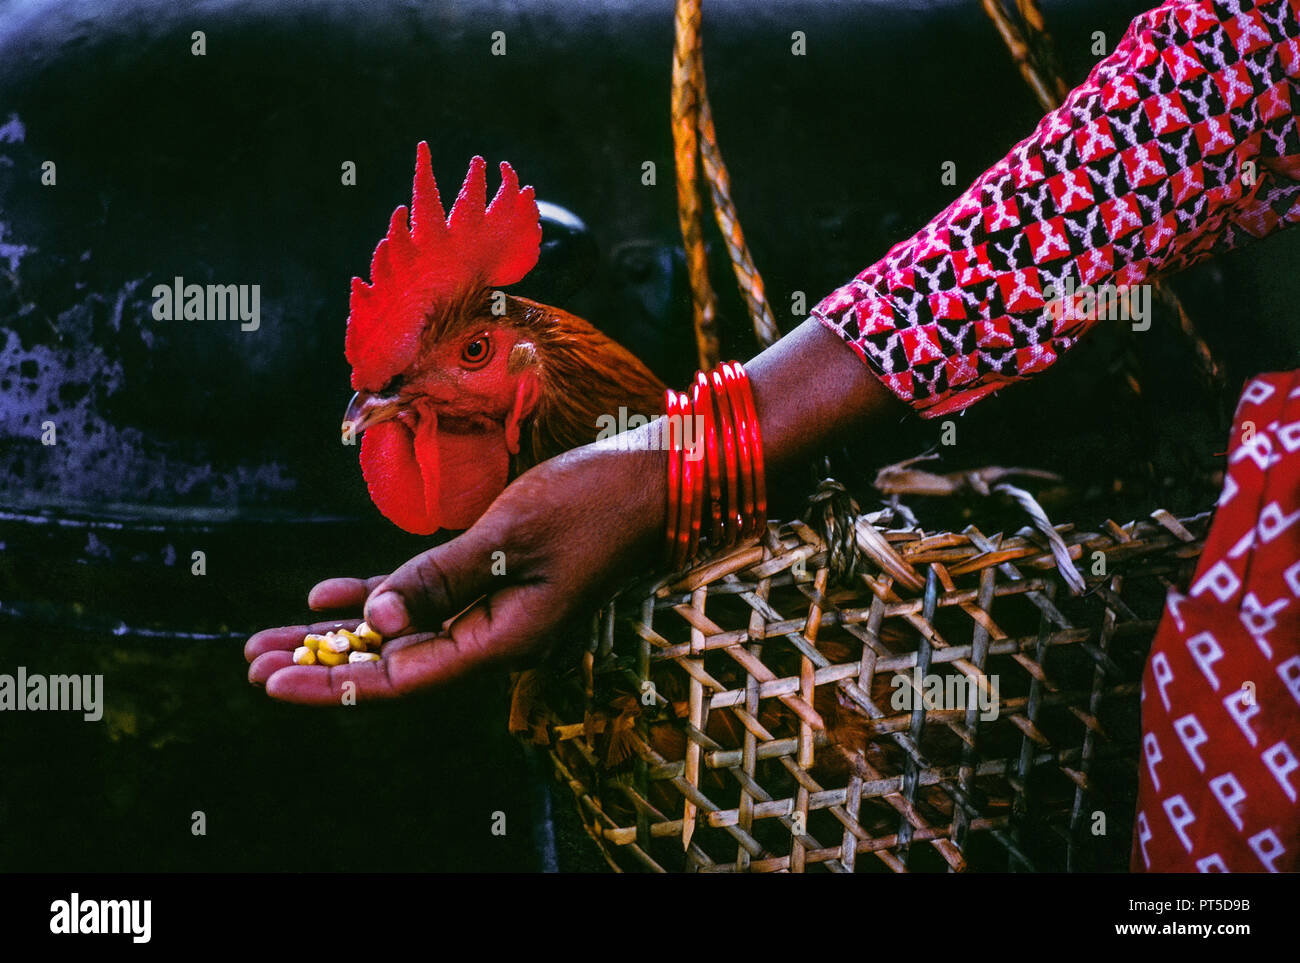 Orgulloso gallo en la bolsa de madera con plumas negras y rojas para la venta. Oferta de mano de maíz. Fotografía analógica Foto de stock